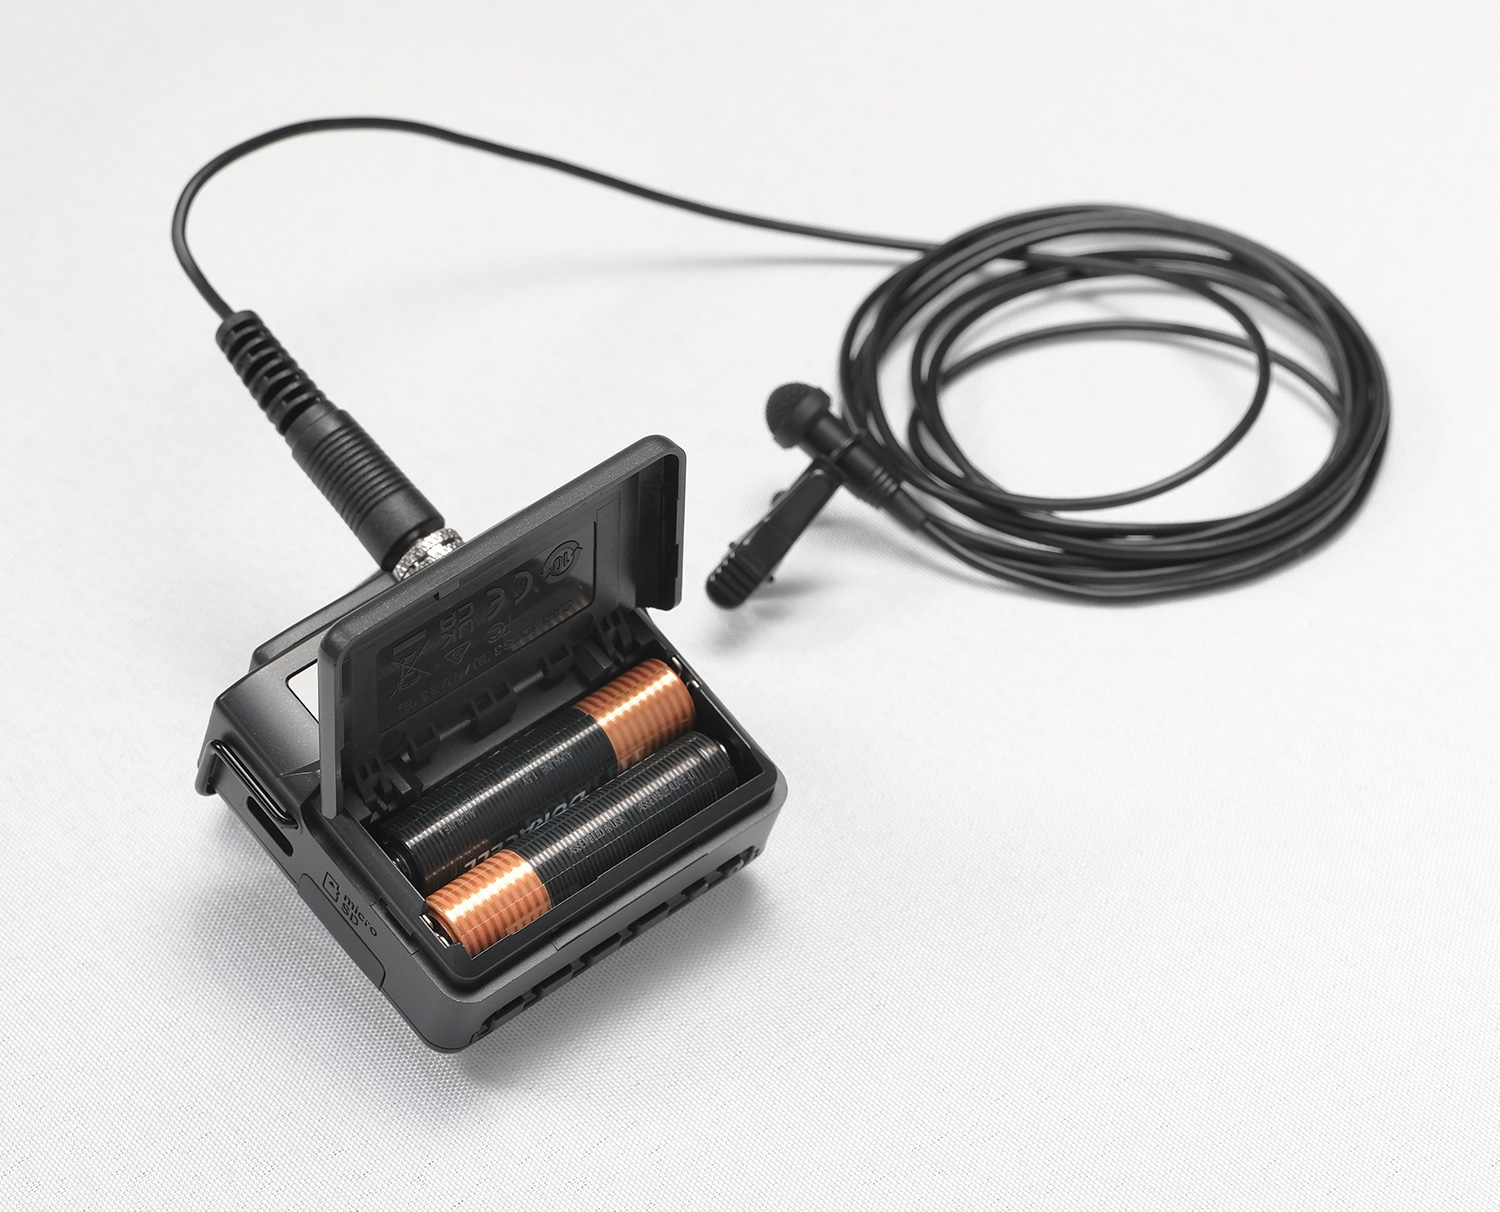 Tascam DR-10L Pro rejestrator audio z mikrofonem lavalier